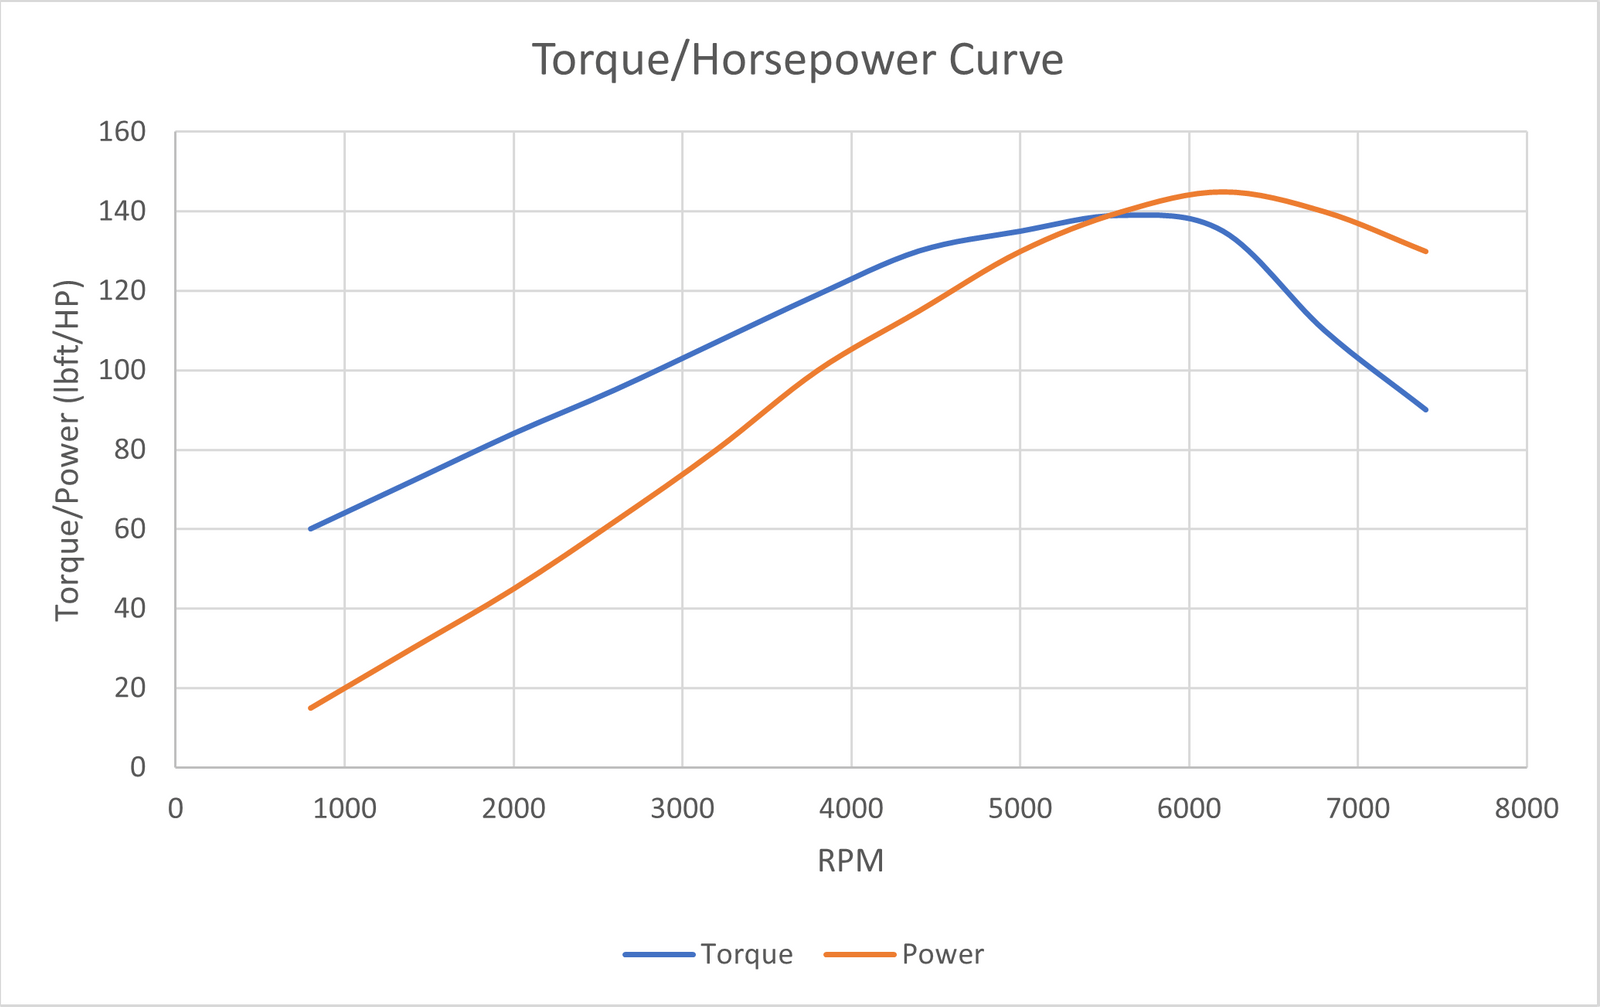 torque and horsepower vs Engine RPM